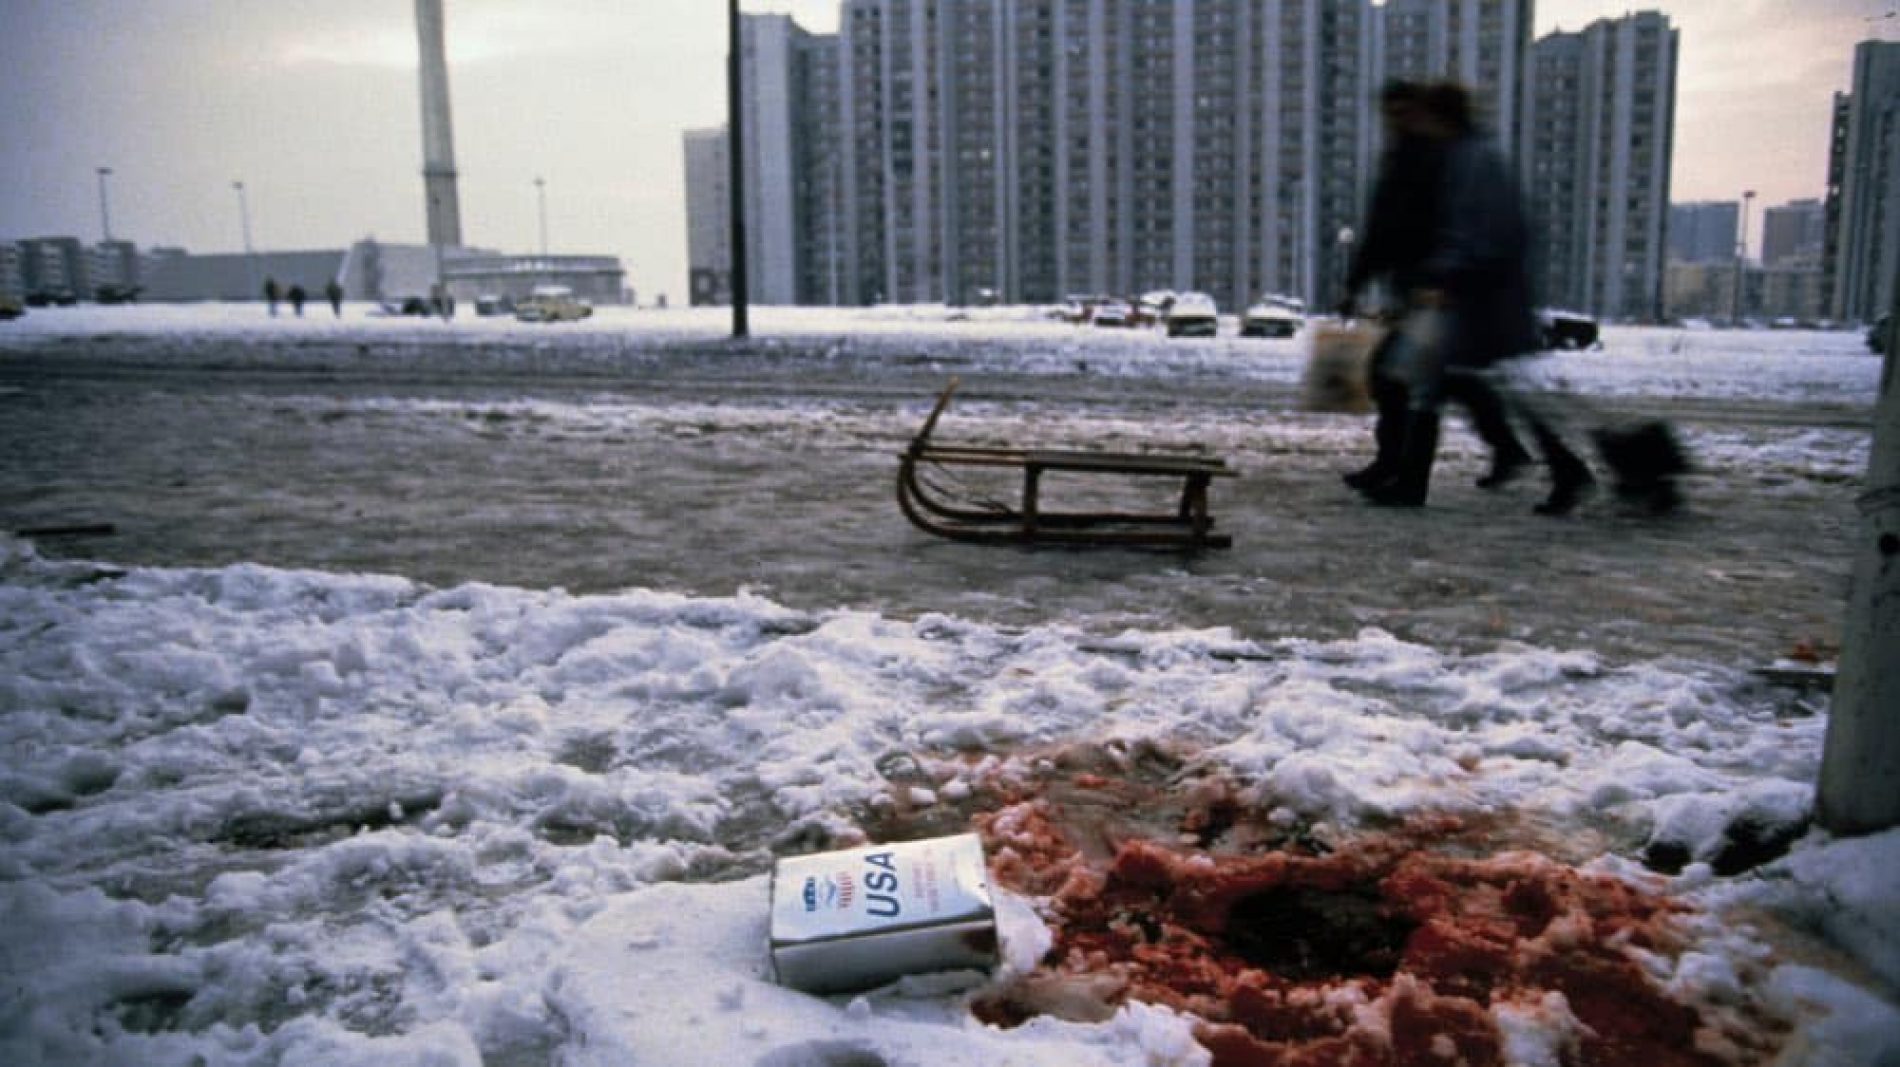 Opsada Sarajeva: Godišnjica ubistva šestero djece na sankanju